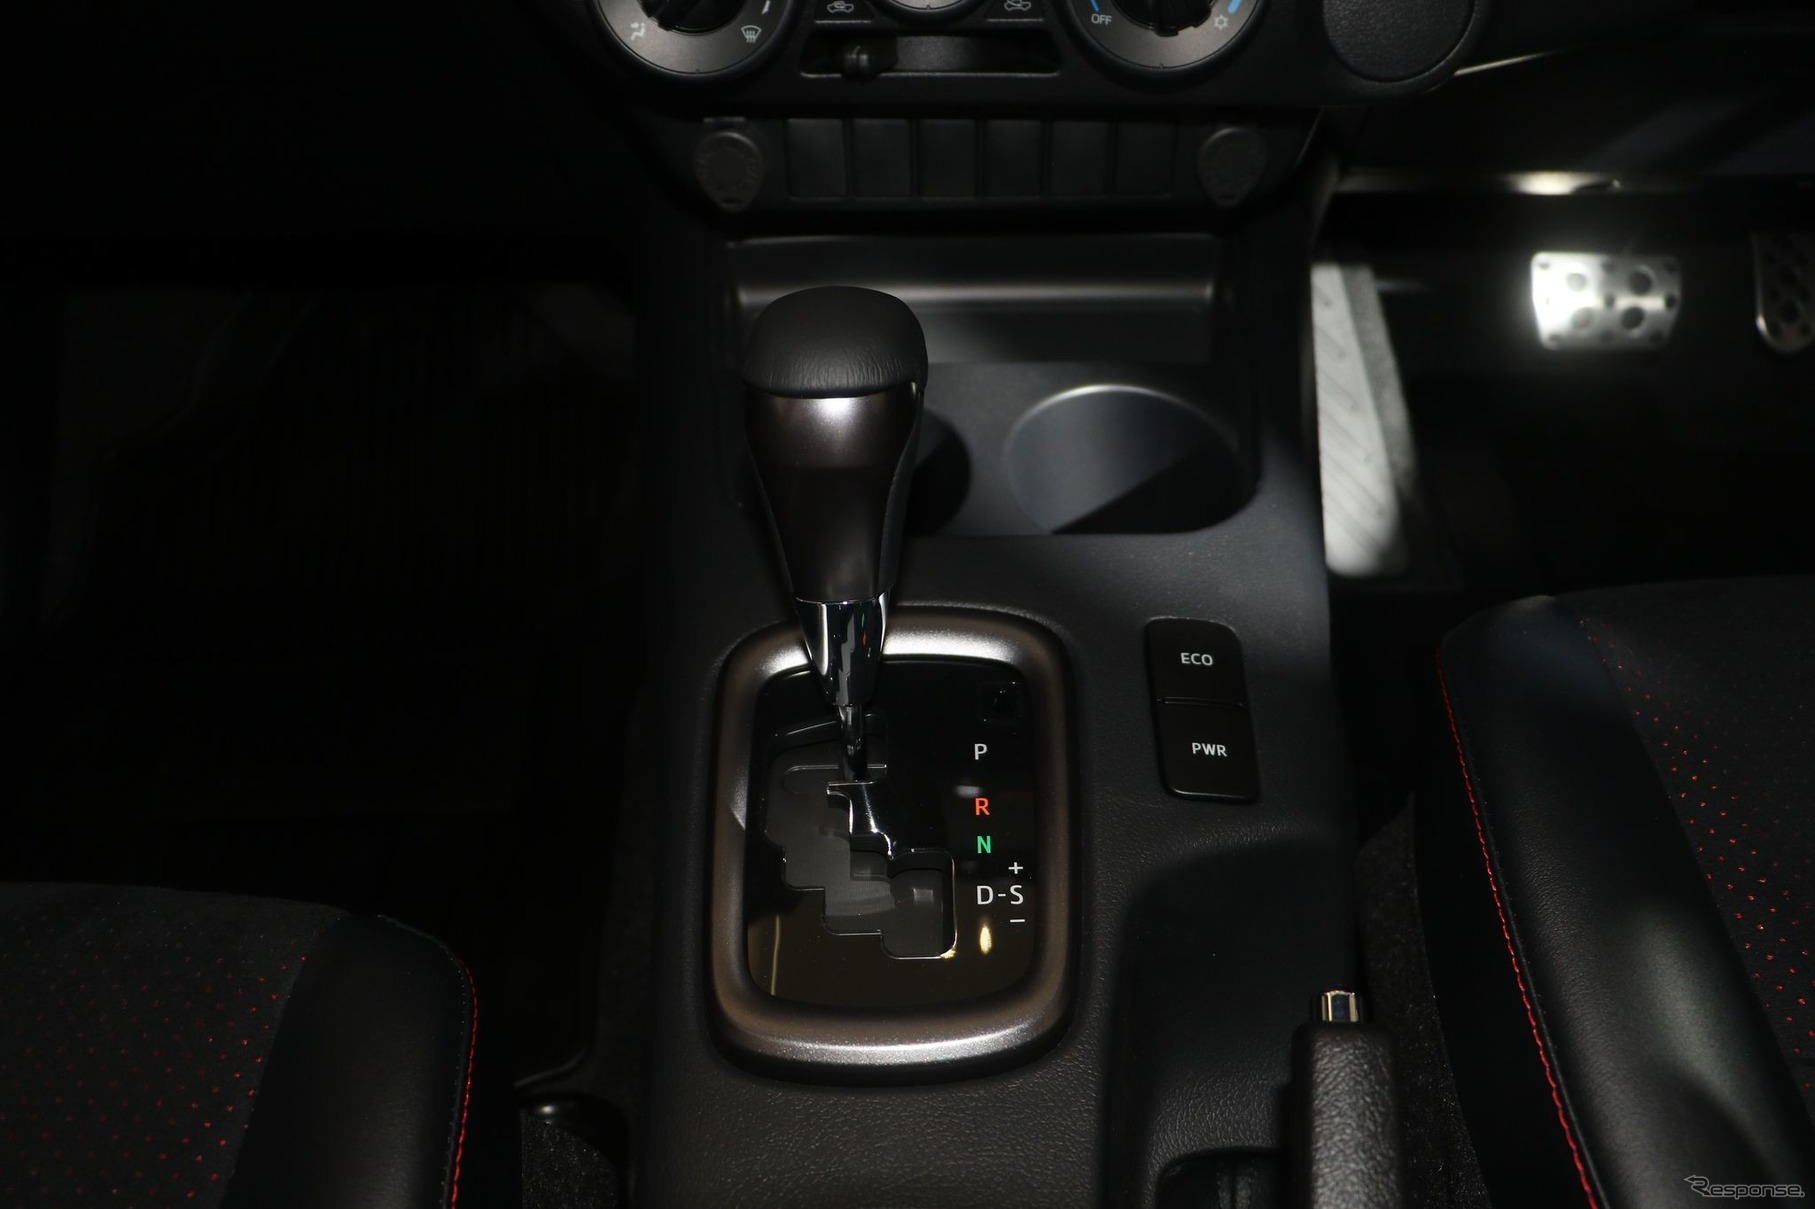 トヨタ・ハイラックス・レボ 改良新型の「GRスポーツ2WDローフロア」